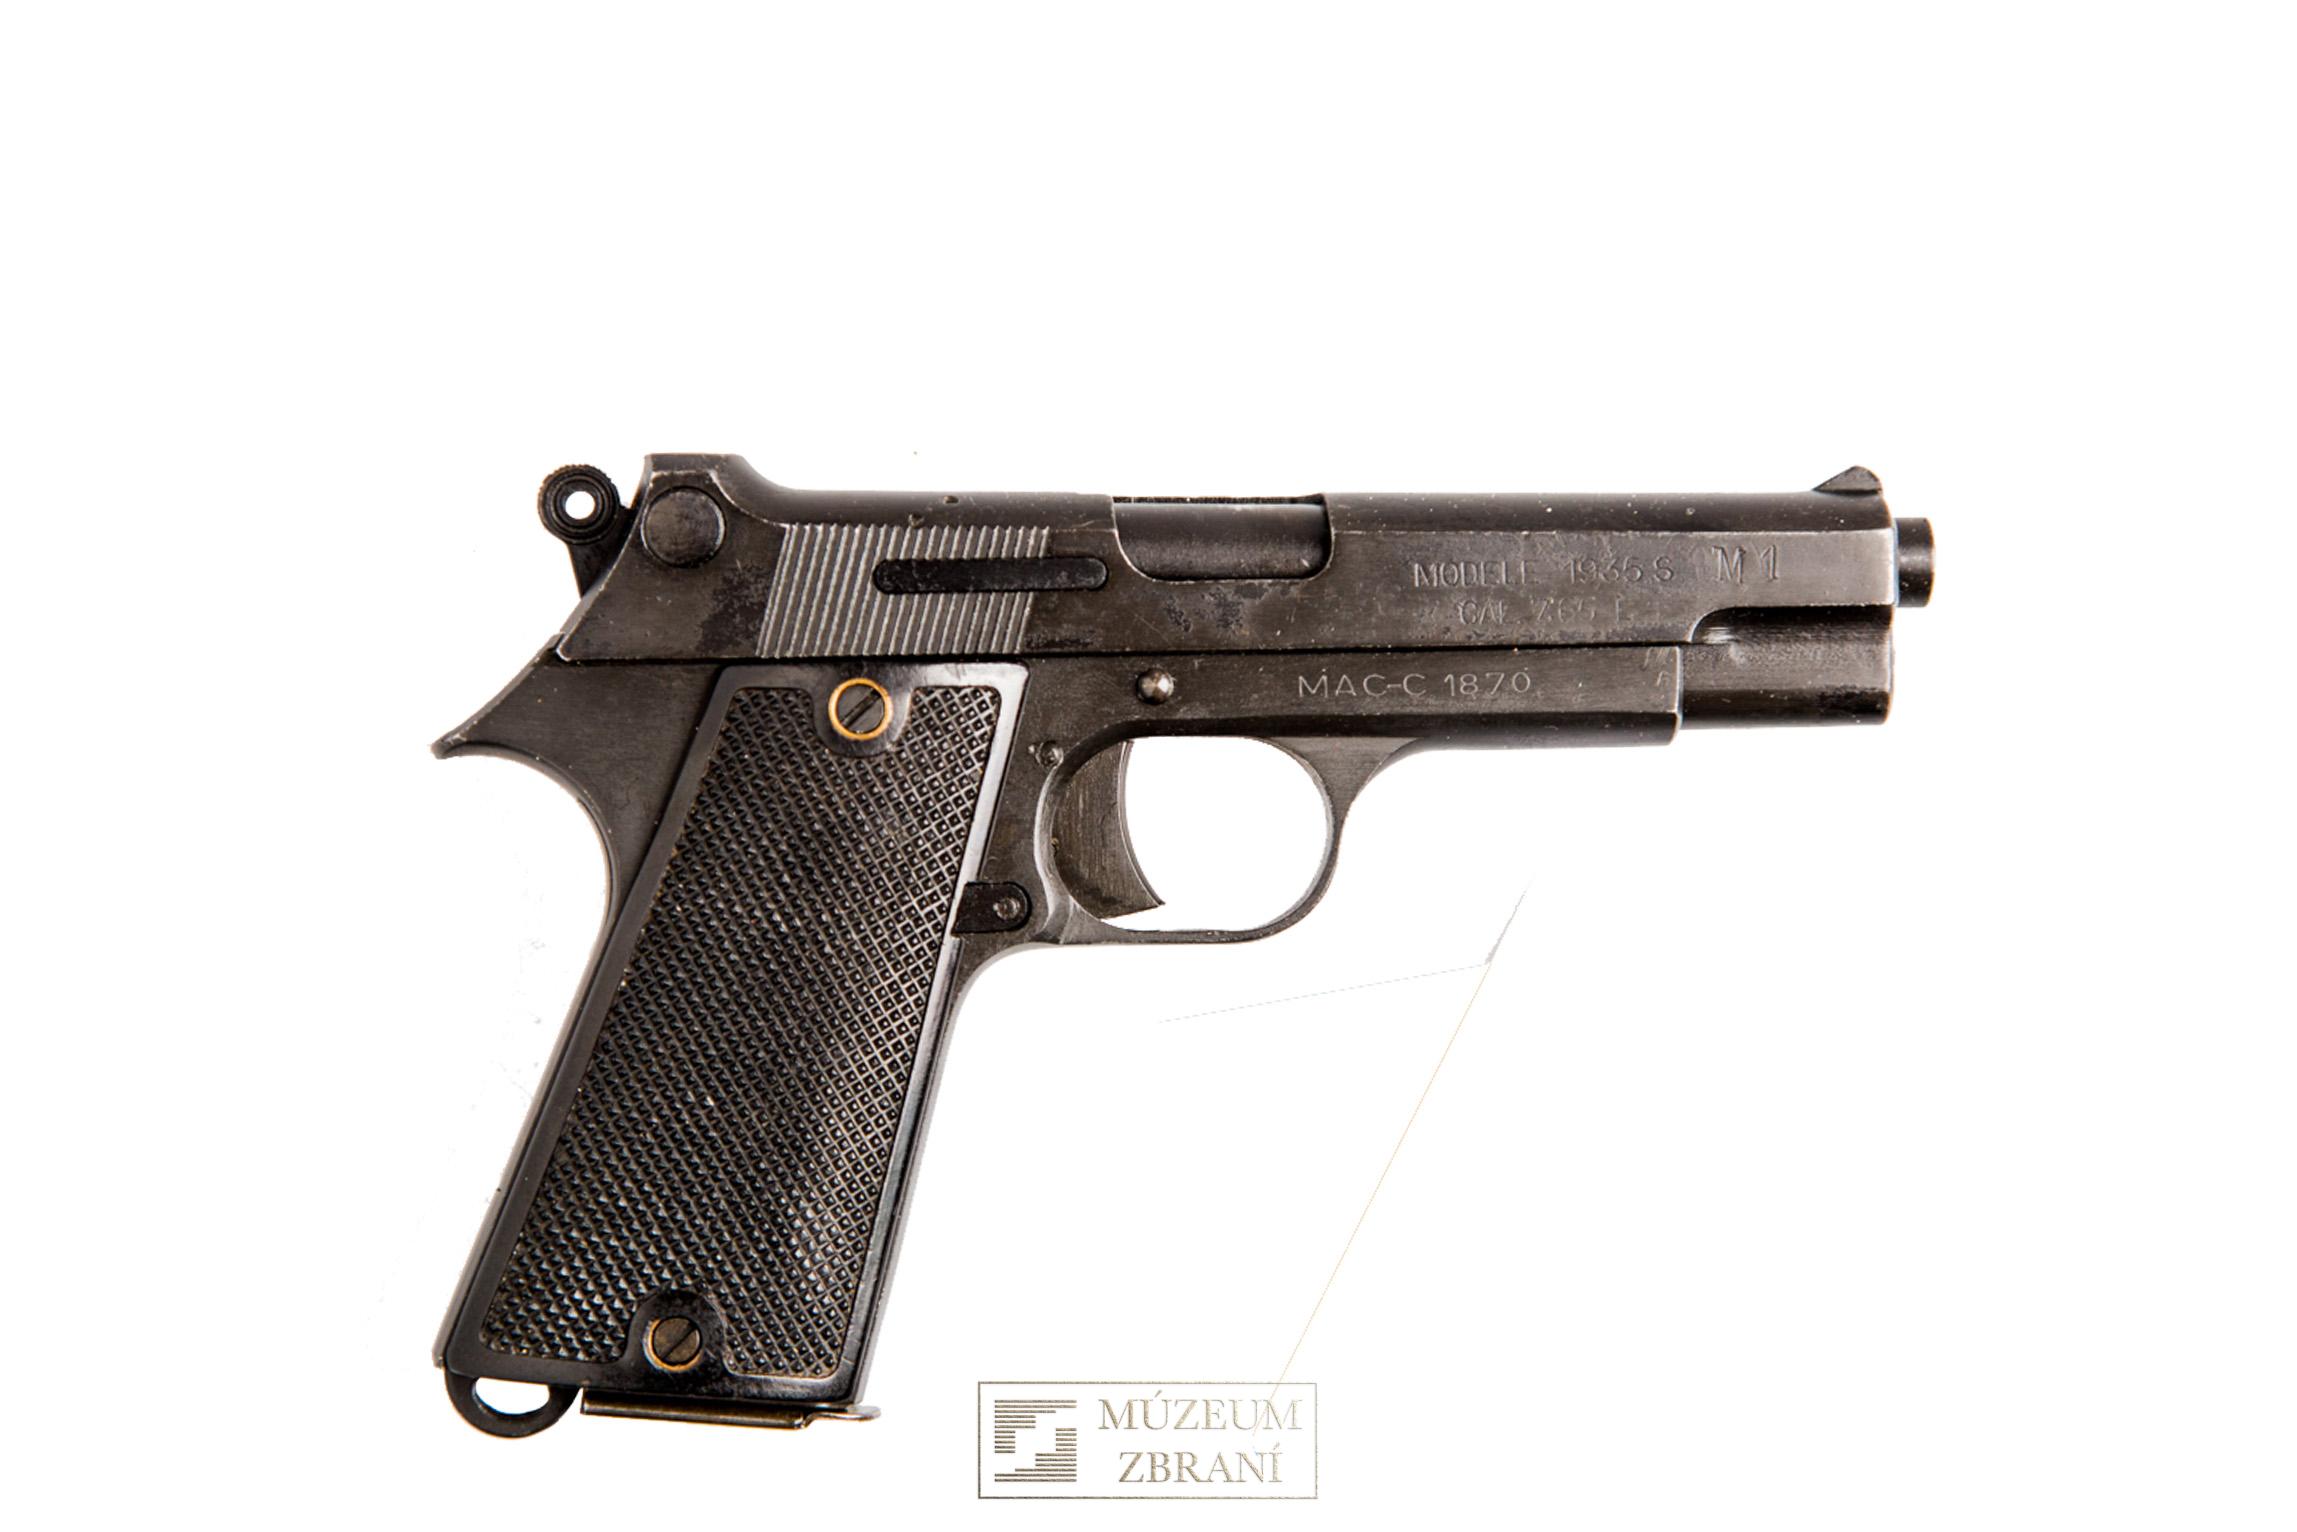 Pistolet automatique Modele 1935S M1